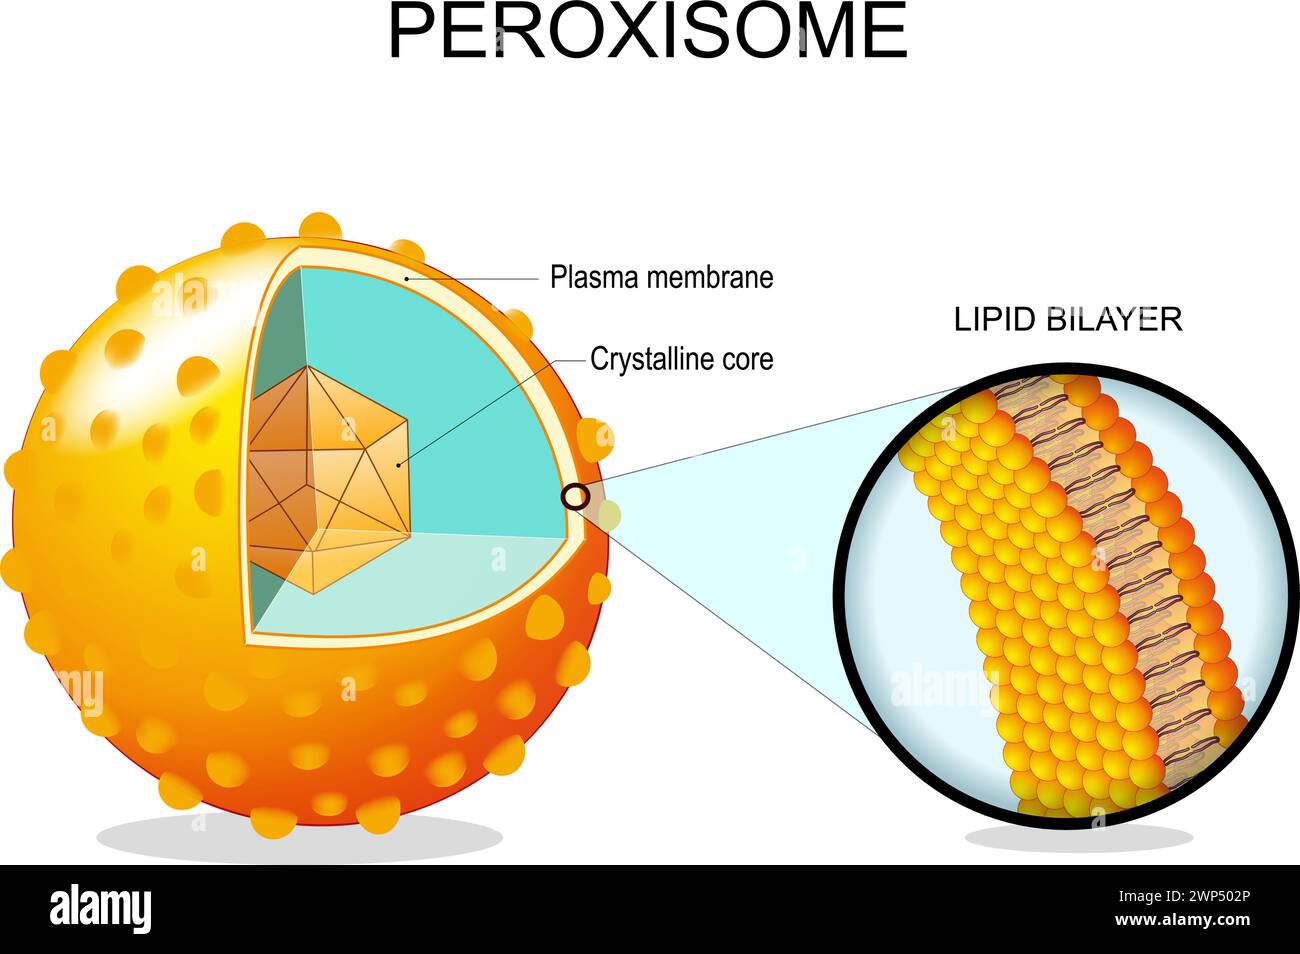 Anatomie des peroxysomes. Section transversale d'un organite cellulaire. Gros plan d'une membrane plasmique bicouche lipidique, d'un noyau cristallin, de protéines de transport. Vecteur illus Illustration de Vecteur